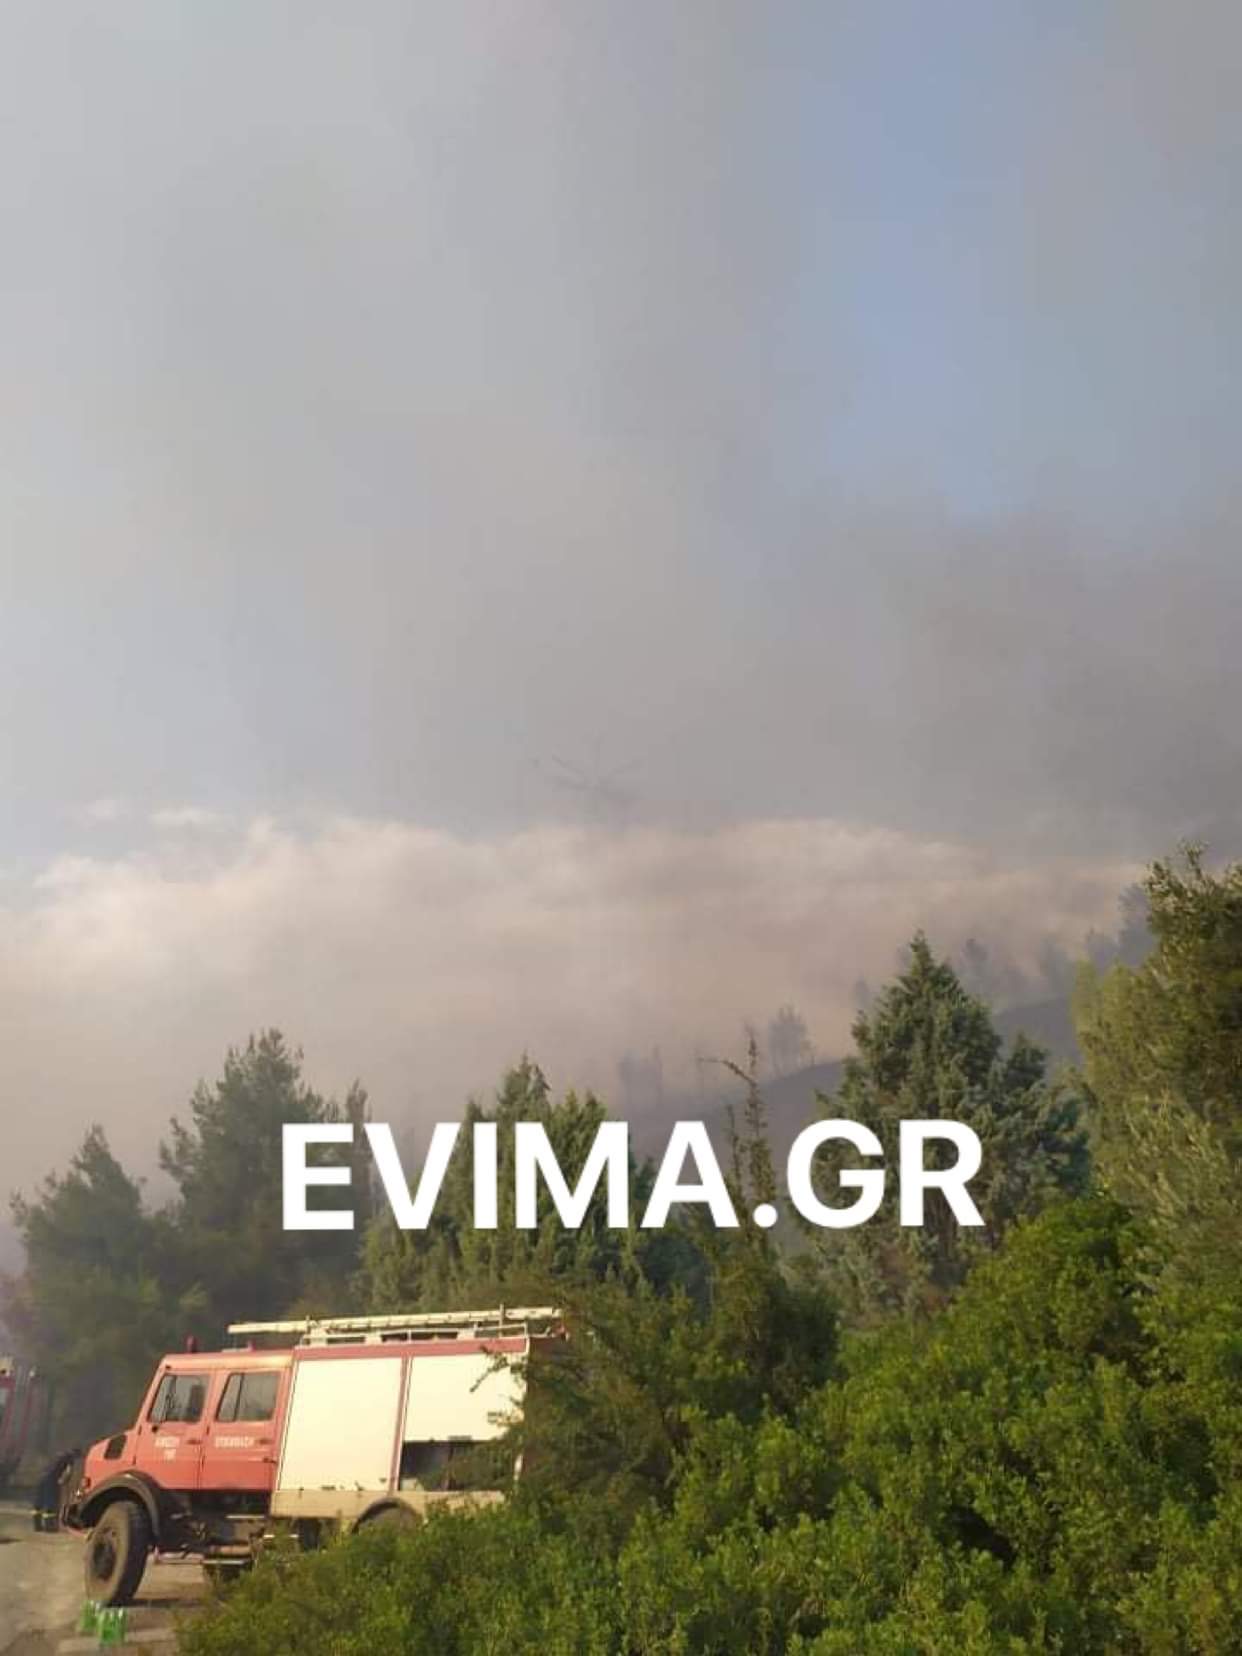 Εύβοια: Φωτιά κοντά σε σπίτι στο ρετσινόλακκο του Δήμου Μαντουδίου Λίμνης Αγίας Άννας